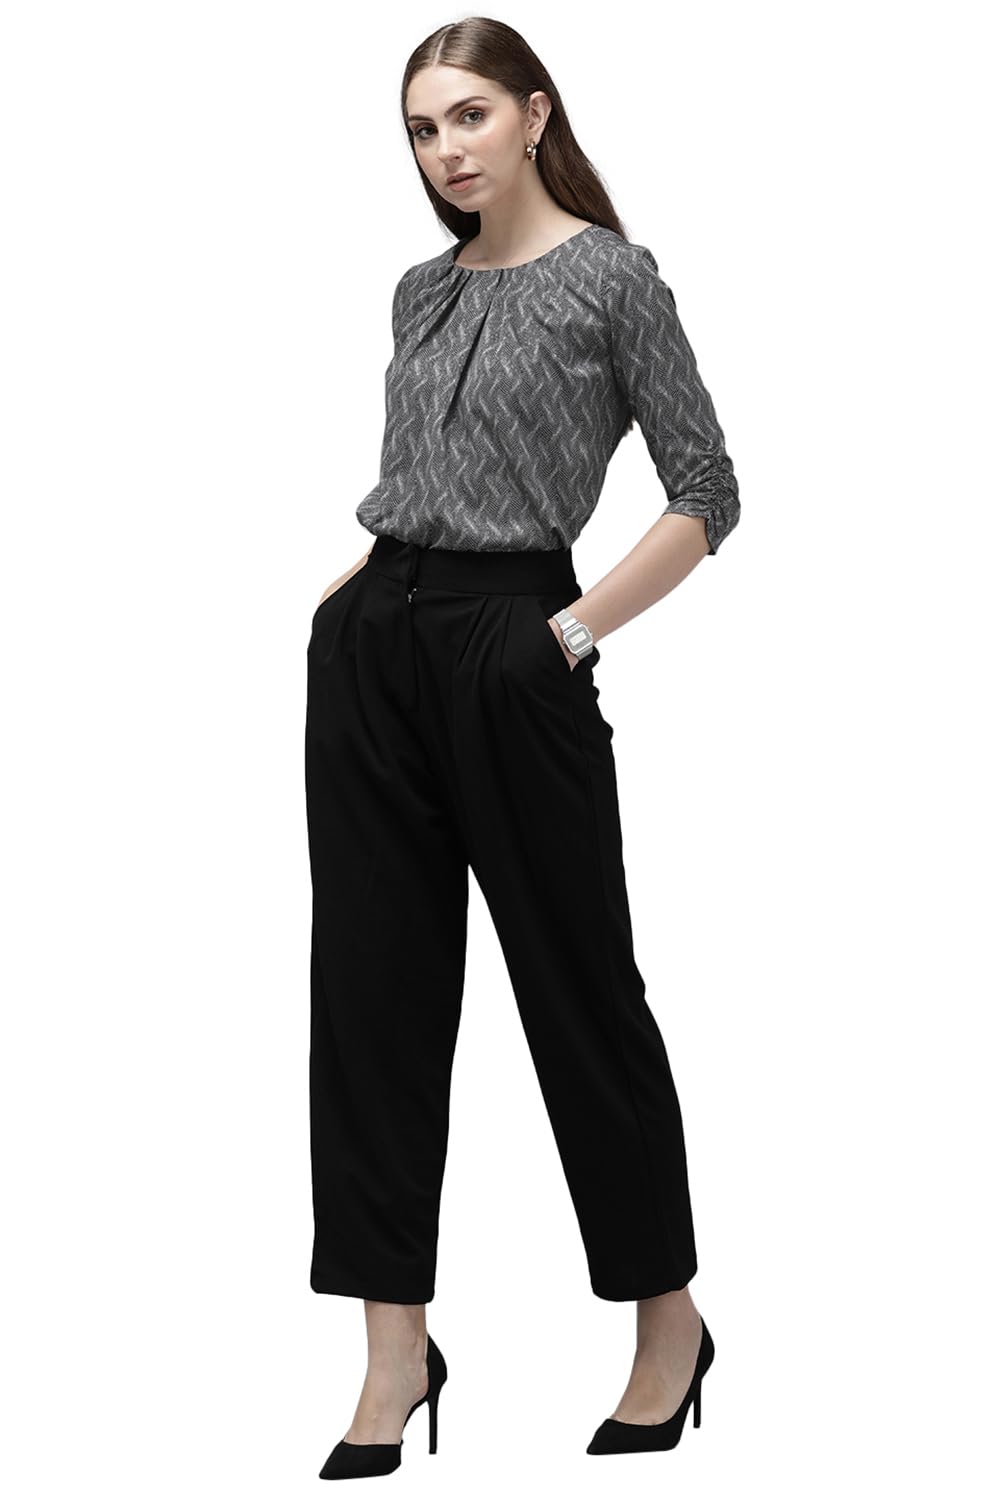 Van Heusen Women's Regular Fit Shirt (VWTSFRGP154641_Grey